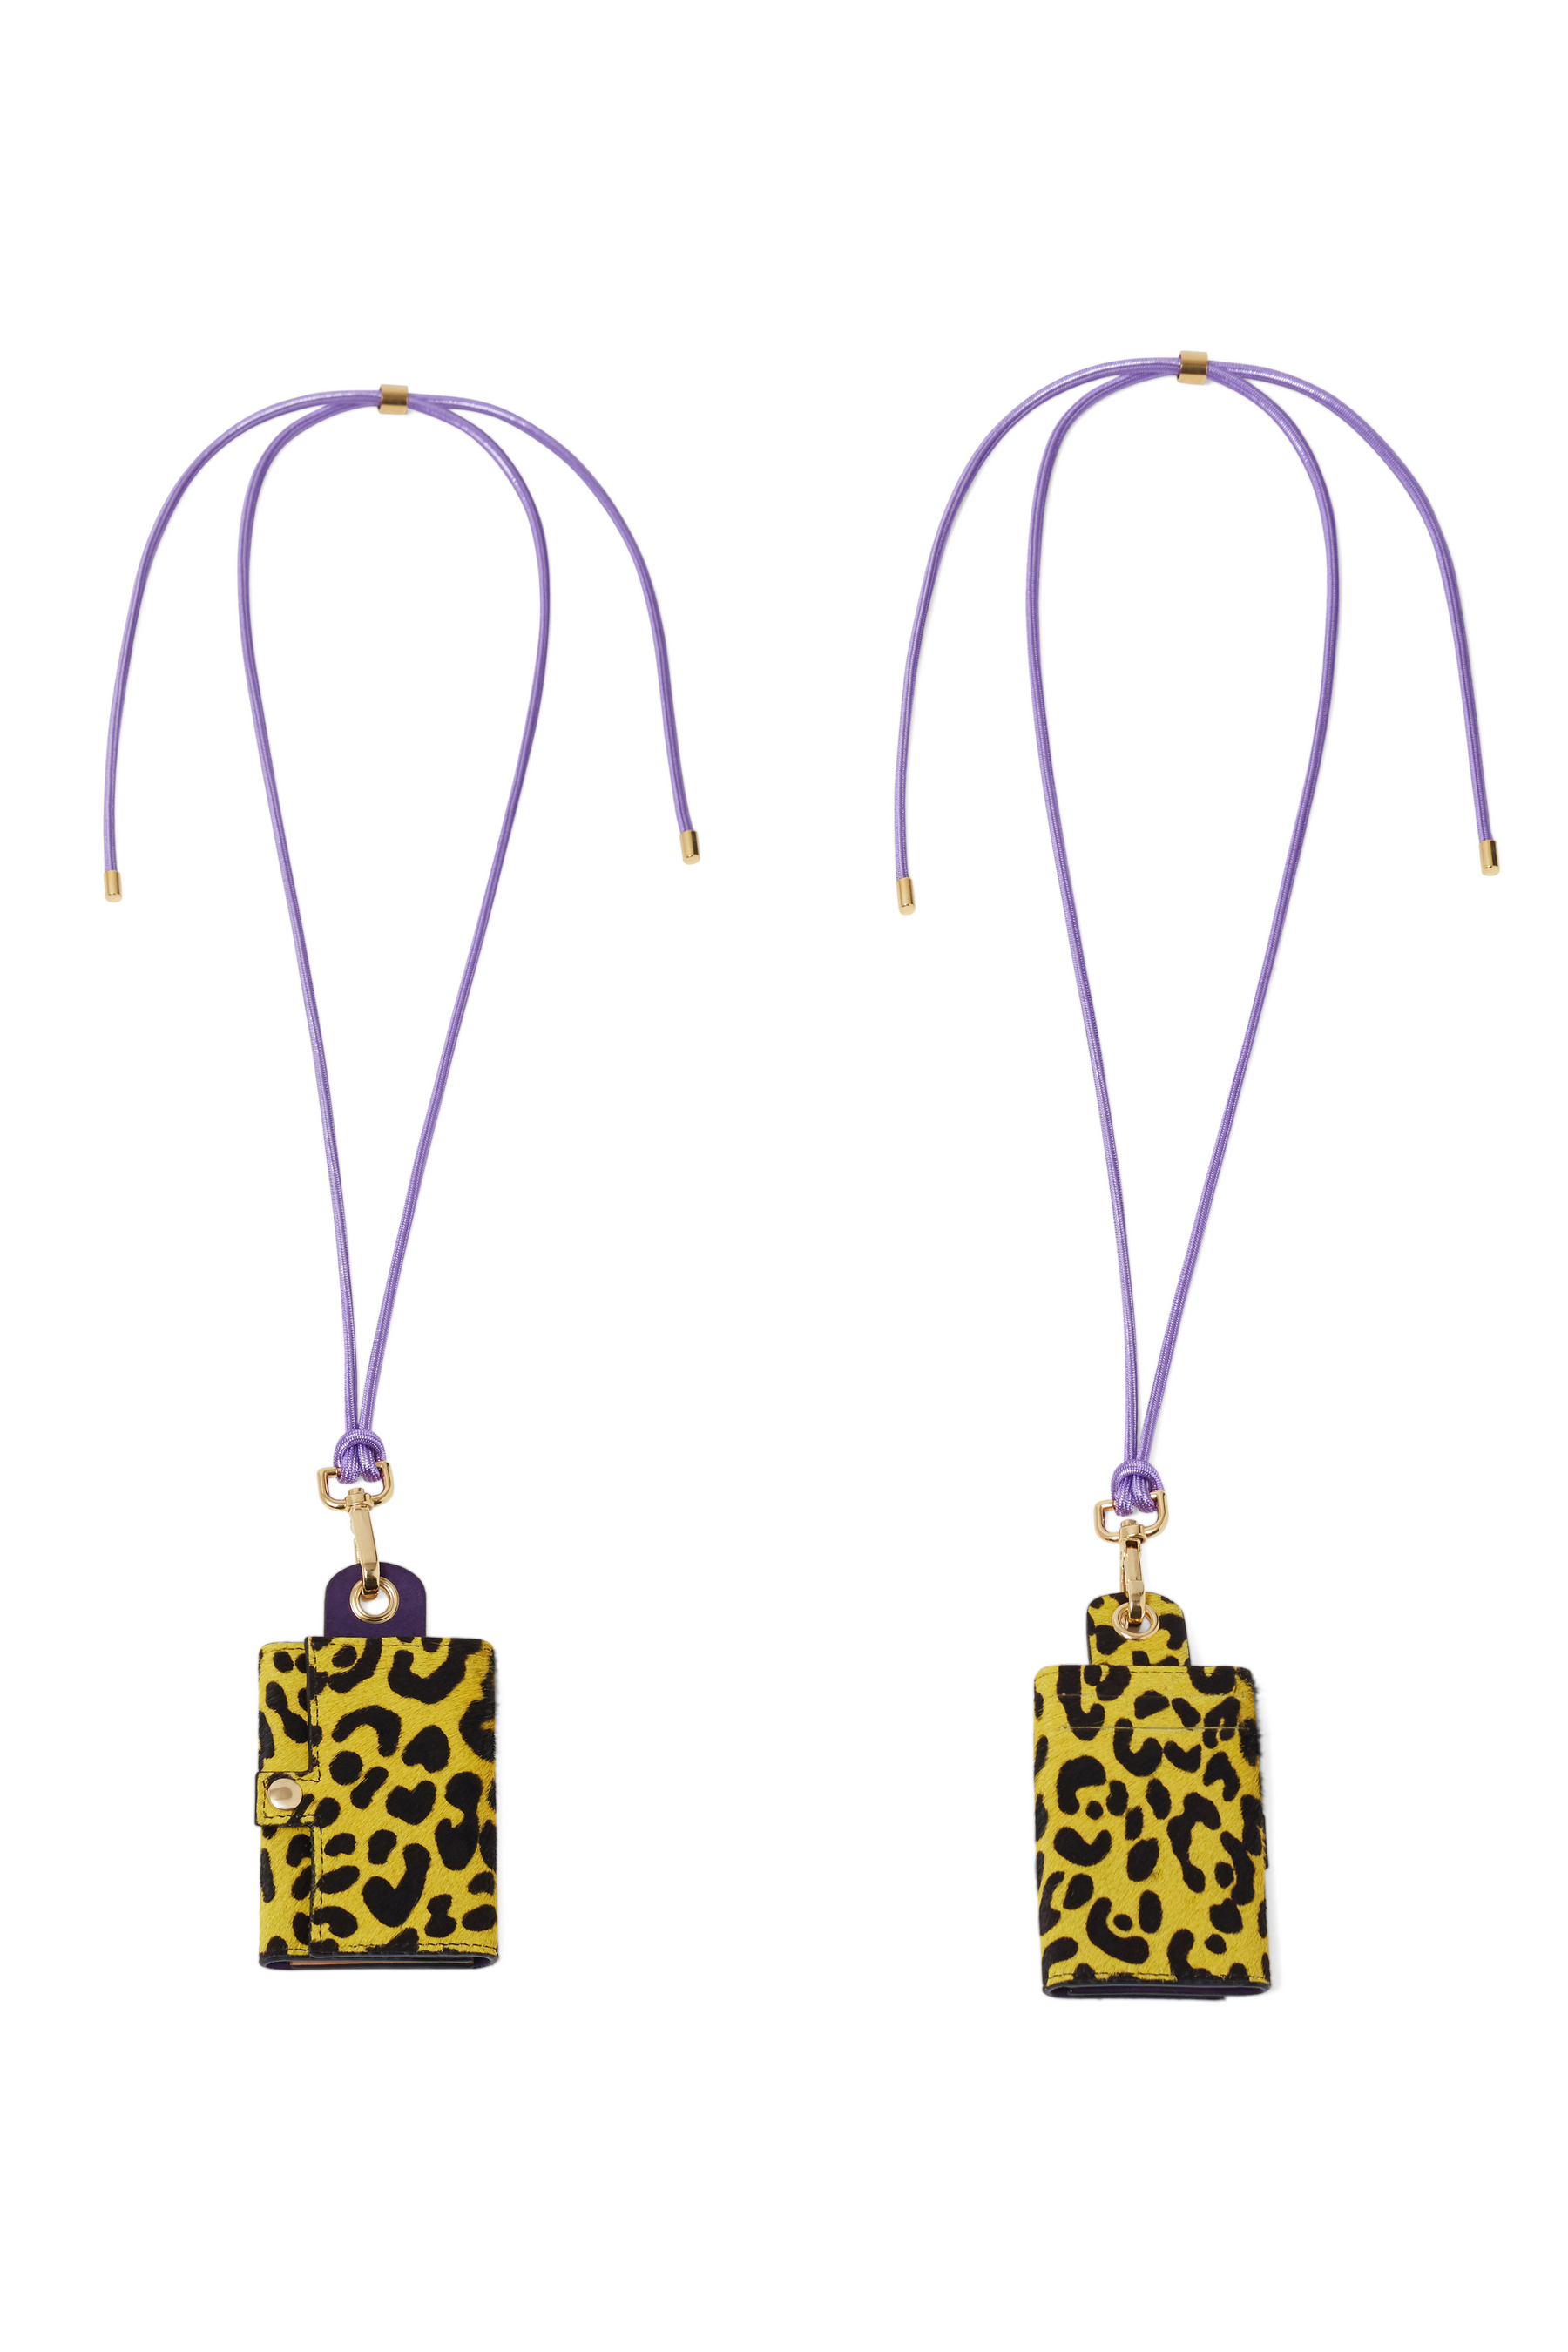 The Minis - Porte-clef à clapet en cuir imprimé léopard jaune